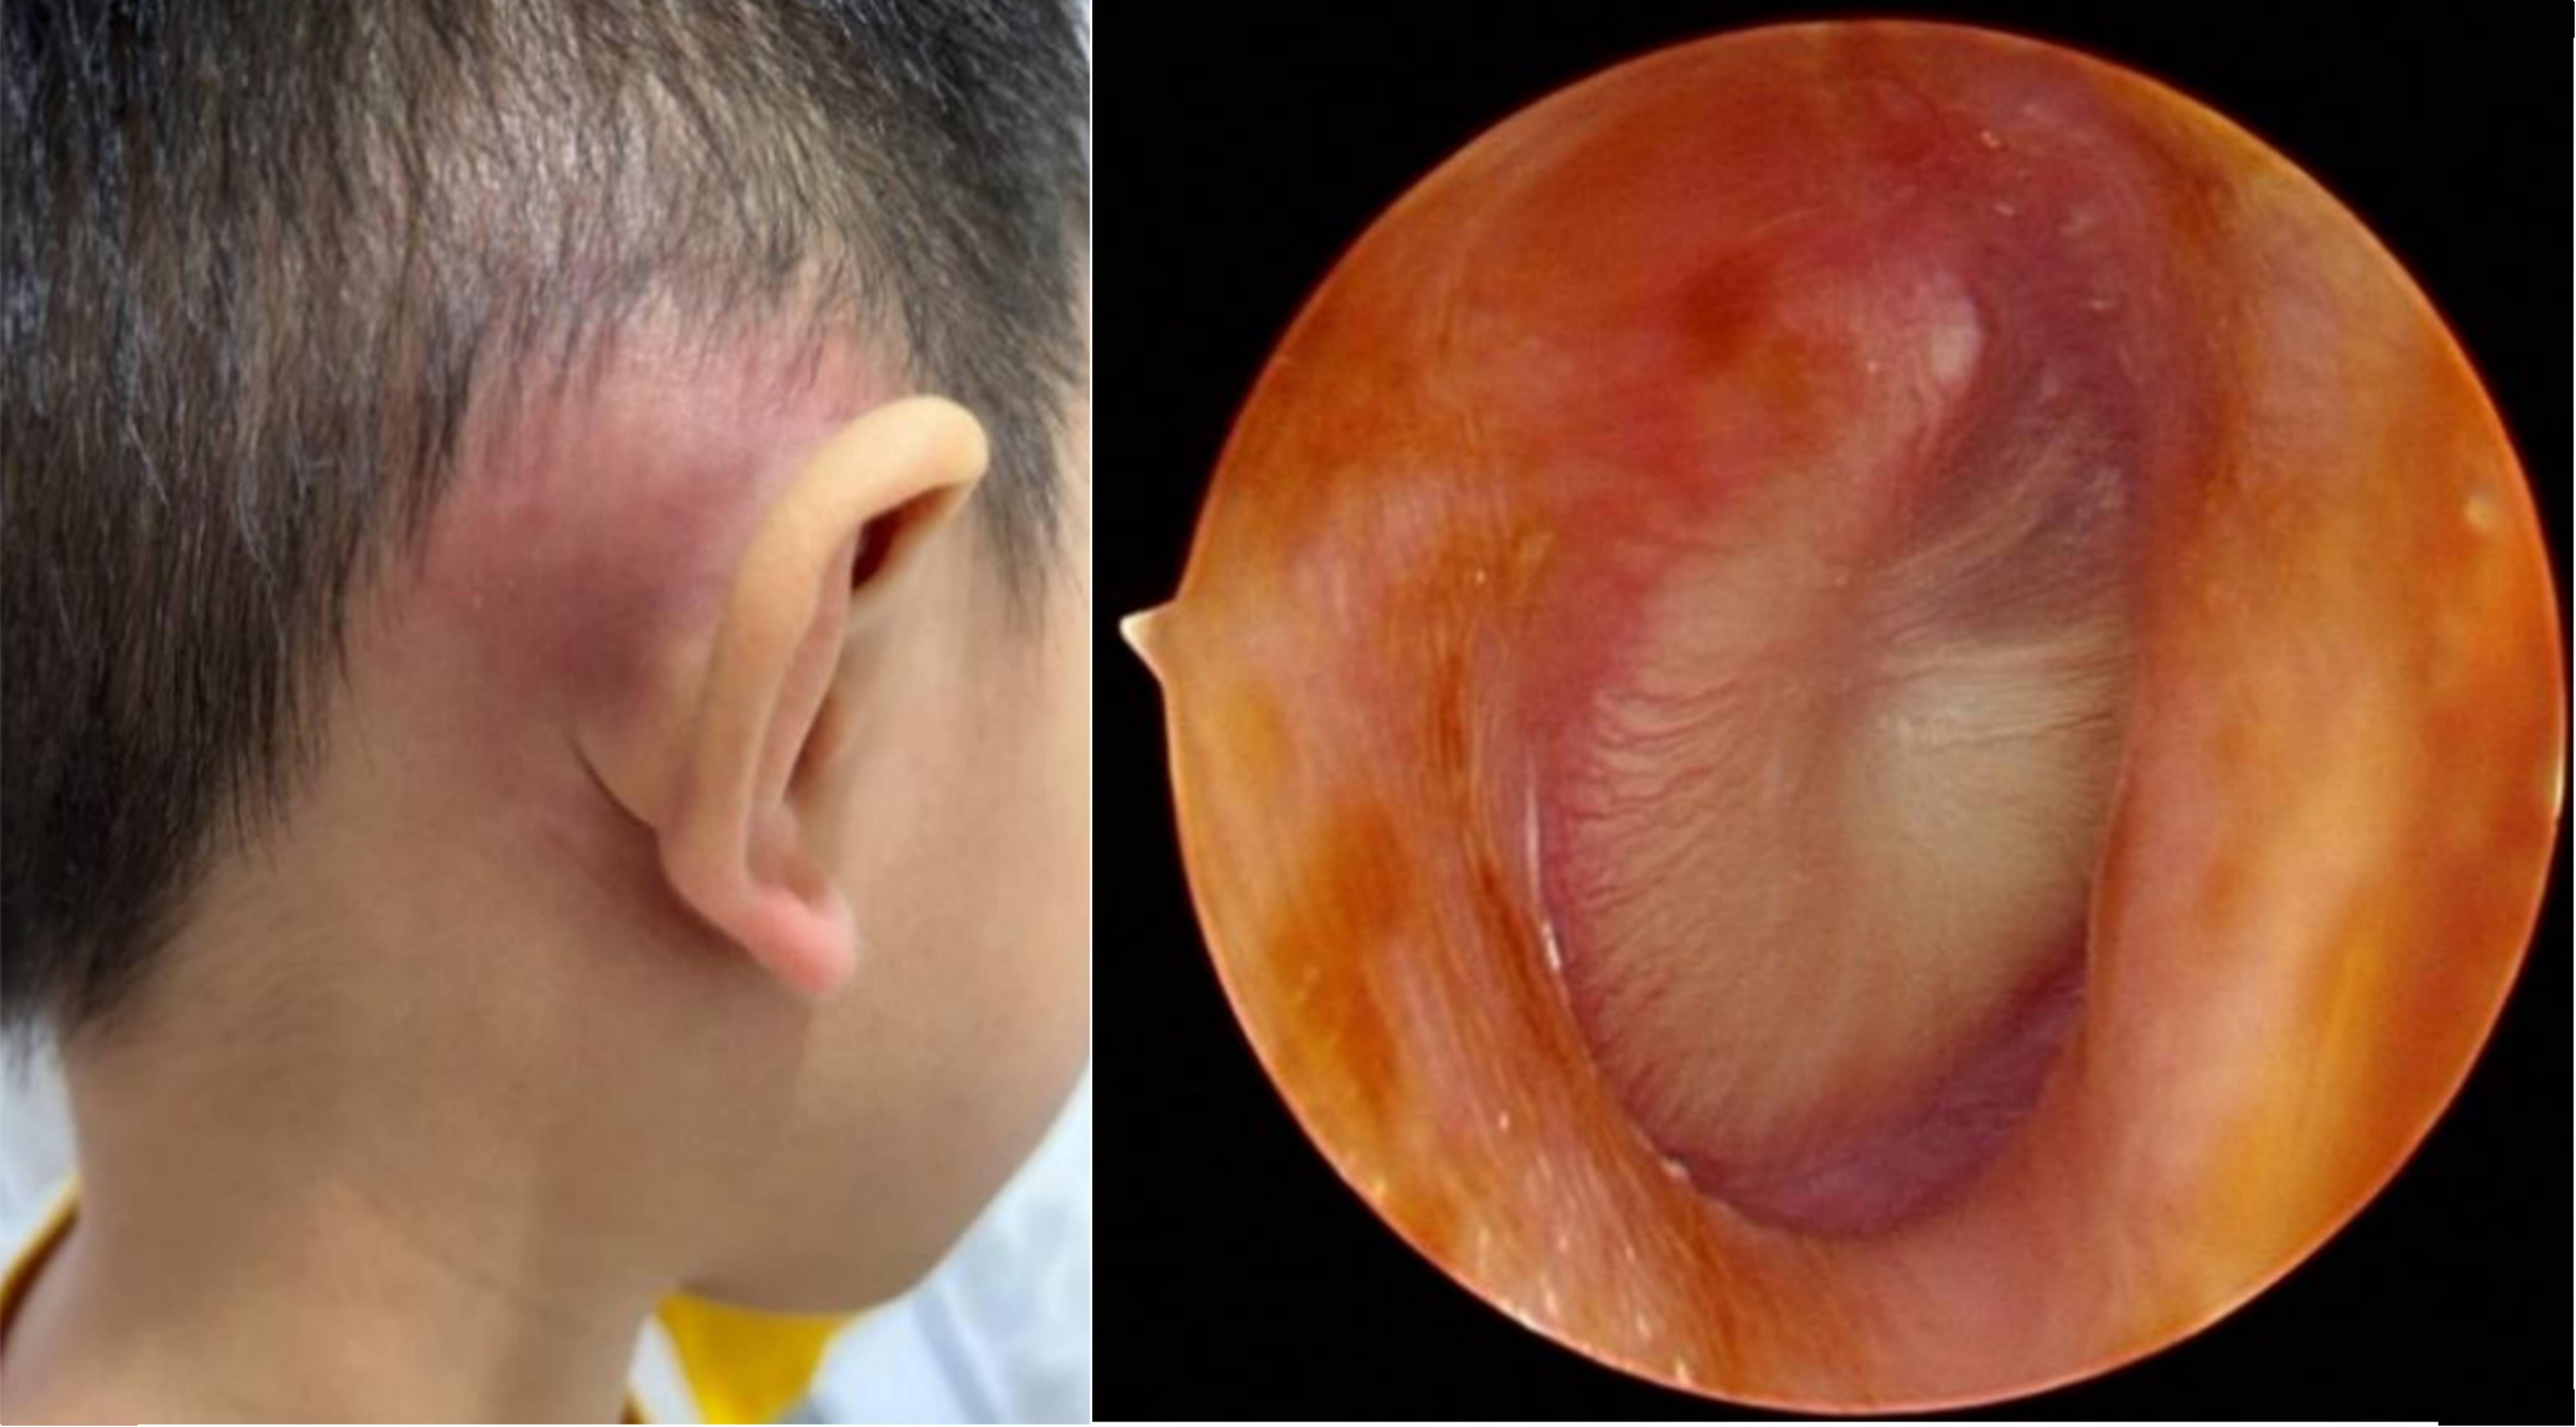 分泌性中耳炎症状图片